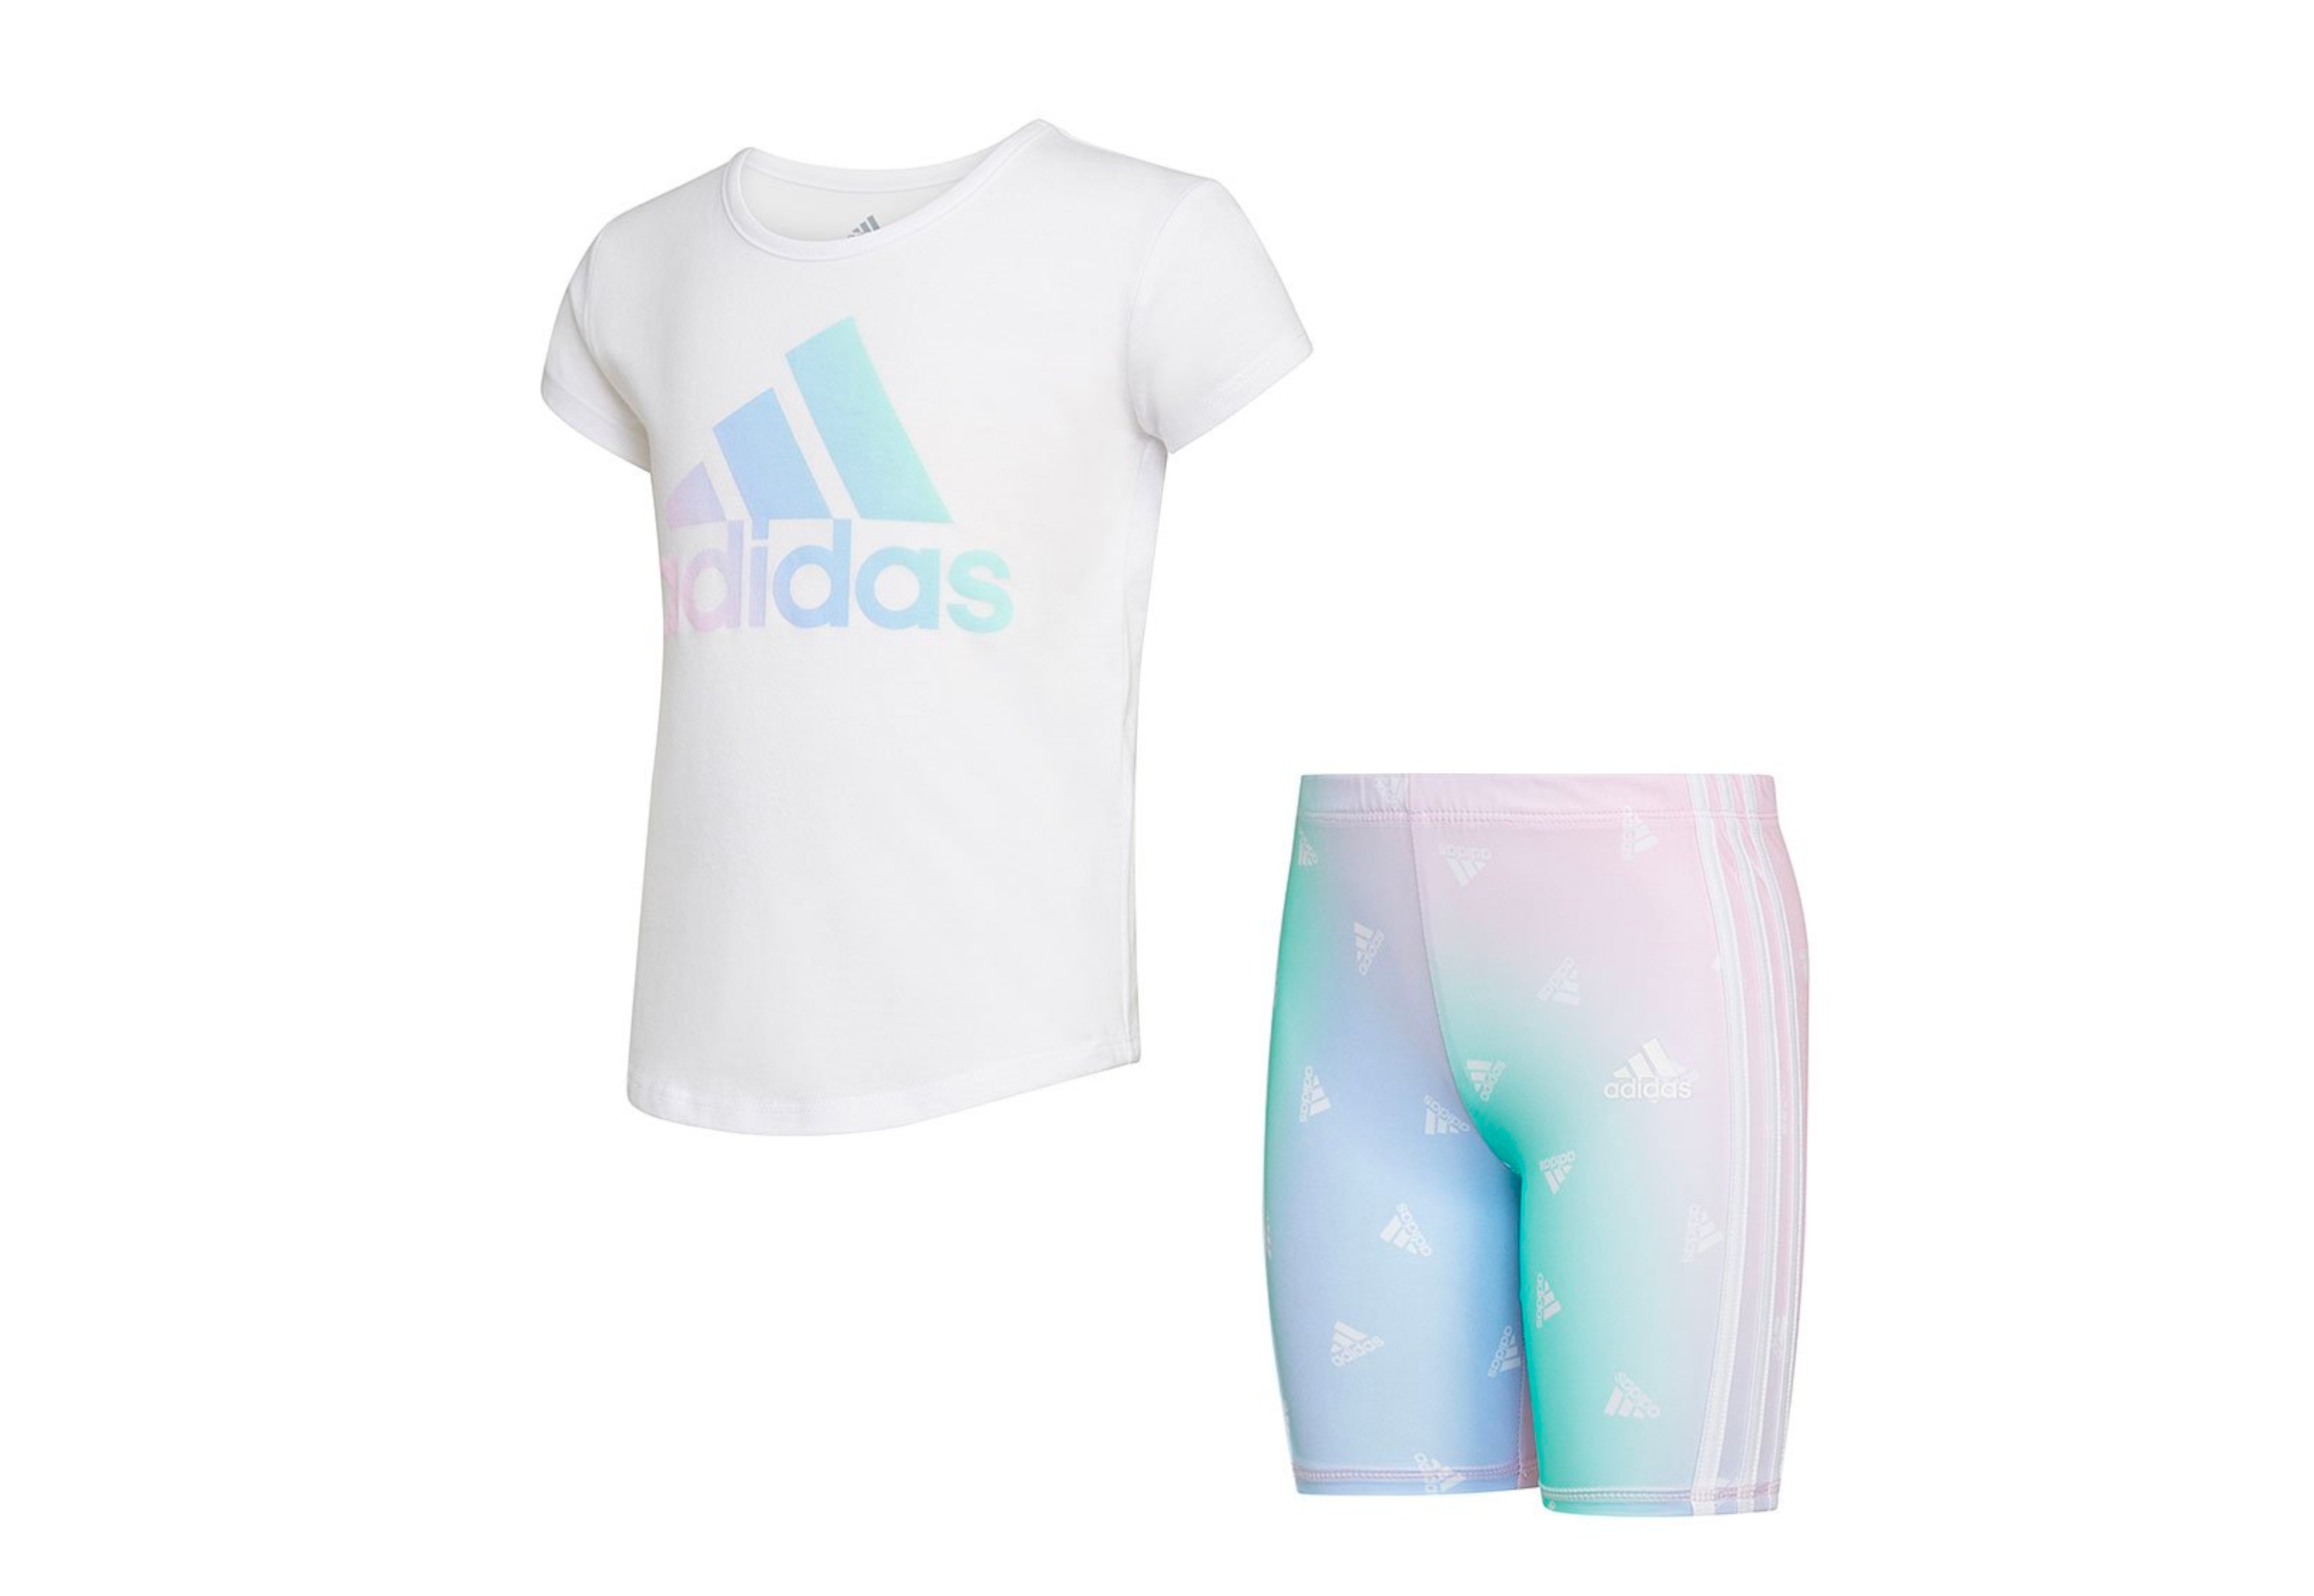 Adidas Shirt and Shorts Set